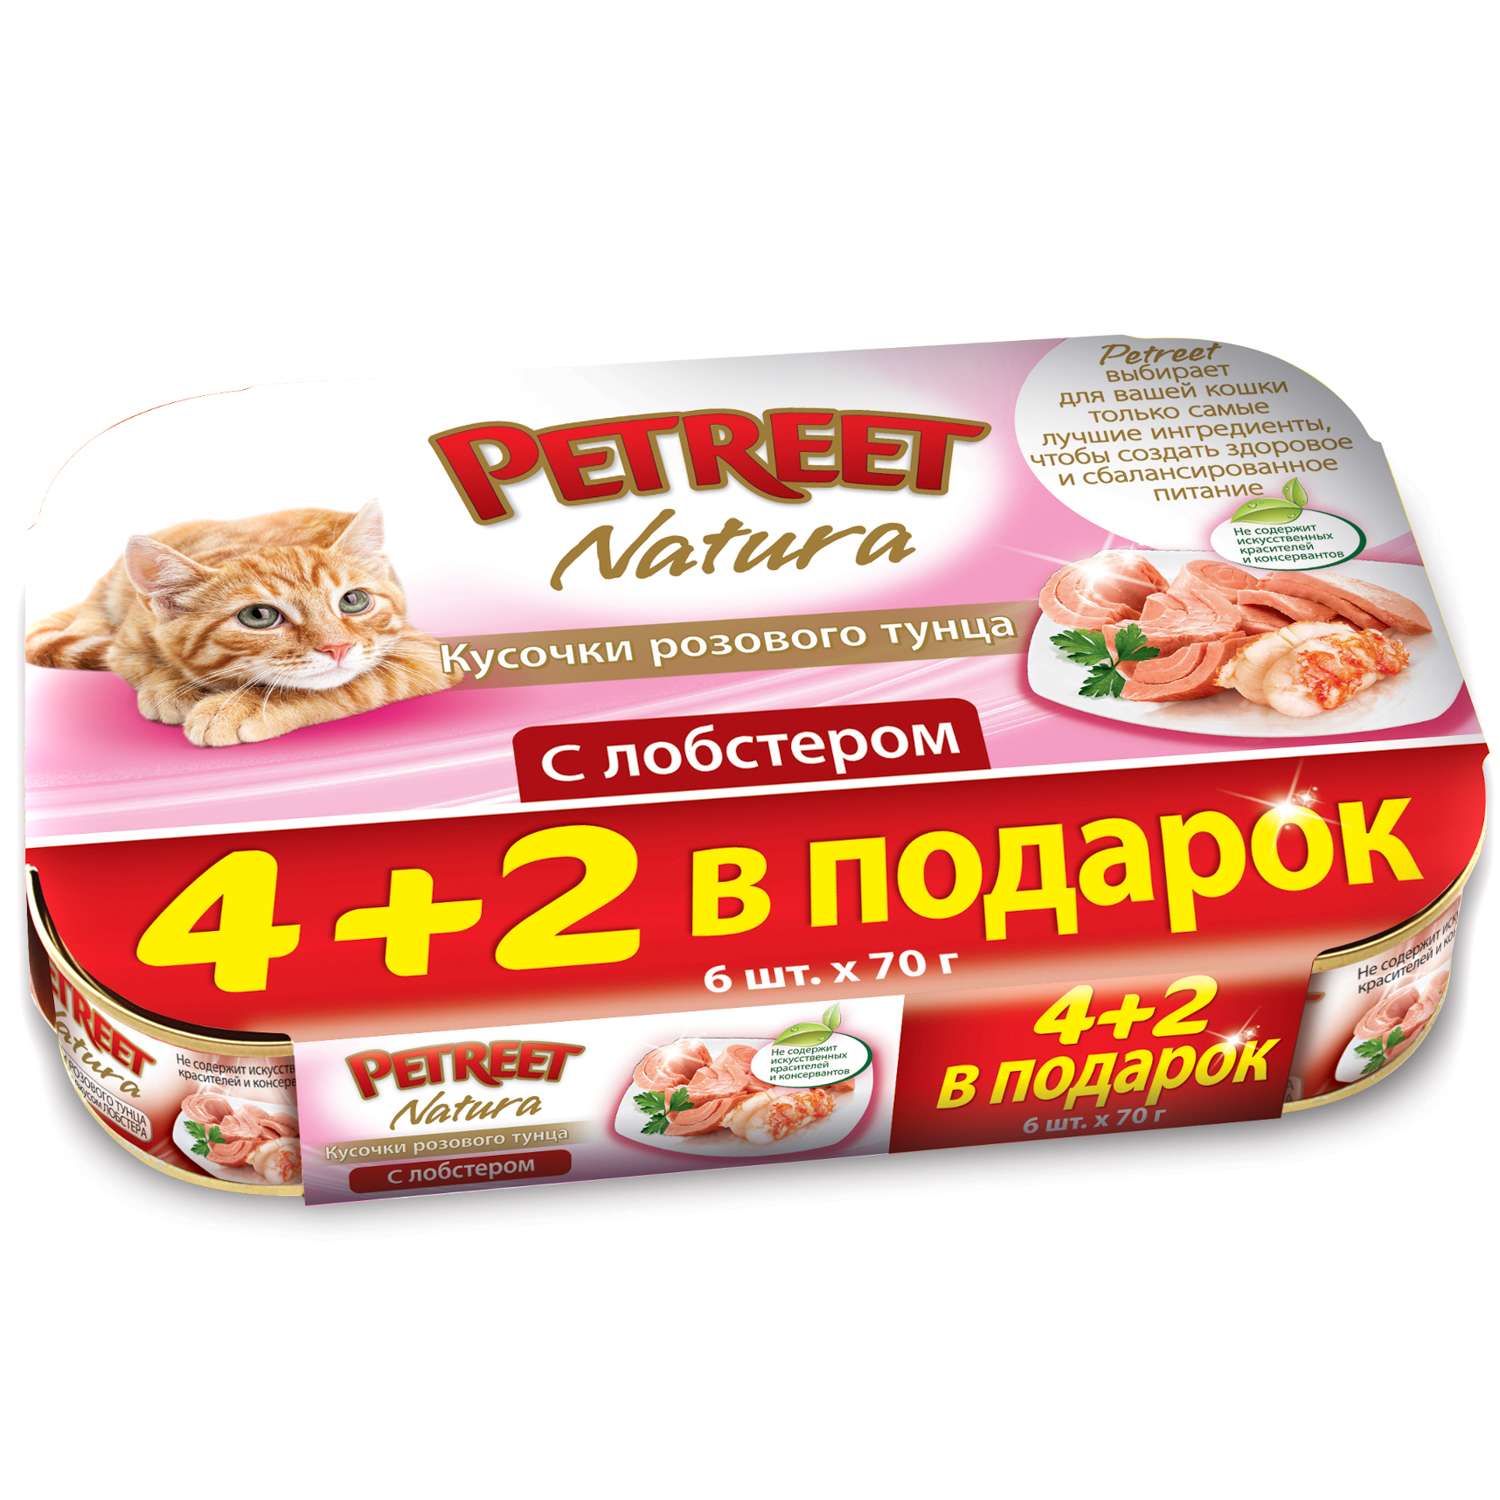 Корм влажный для кошек Petreet Multipack кусочки розового тунца с лобстером - фото 1